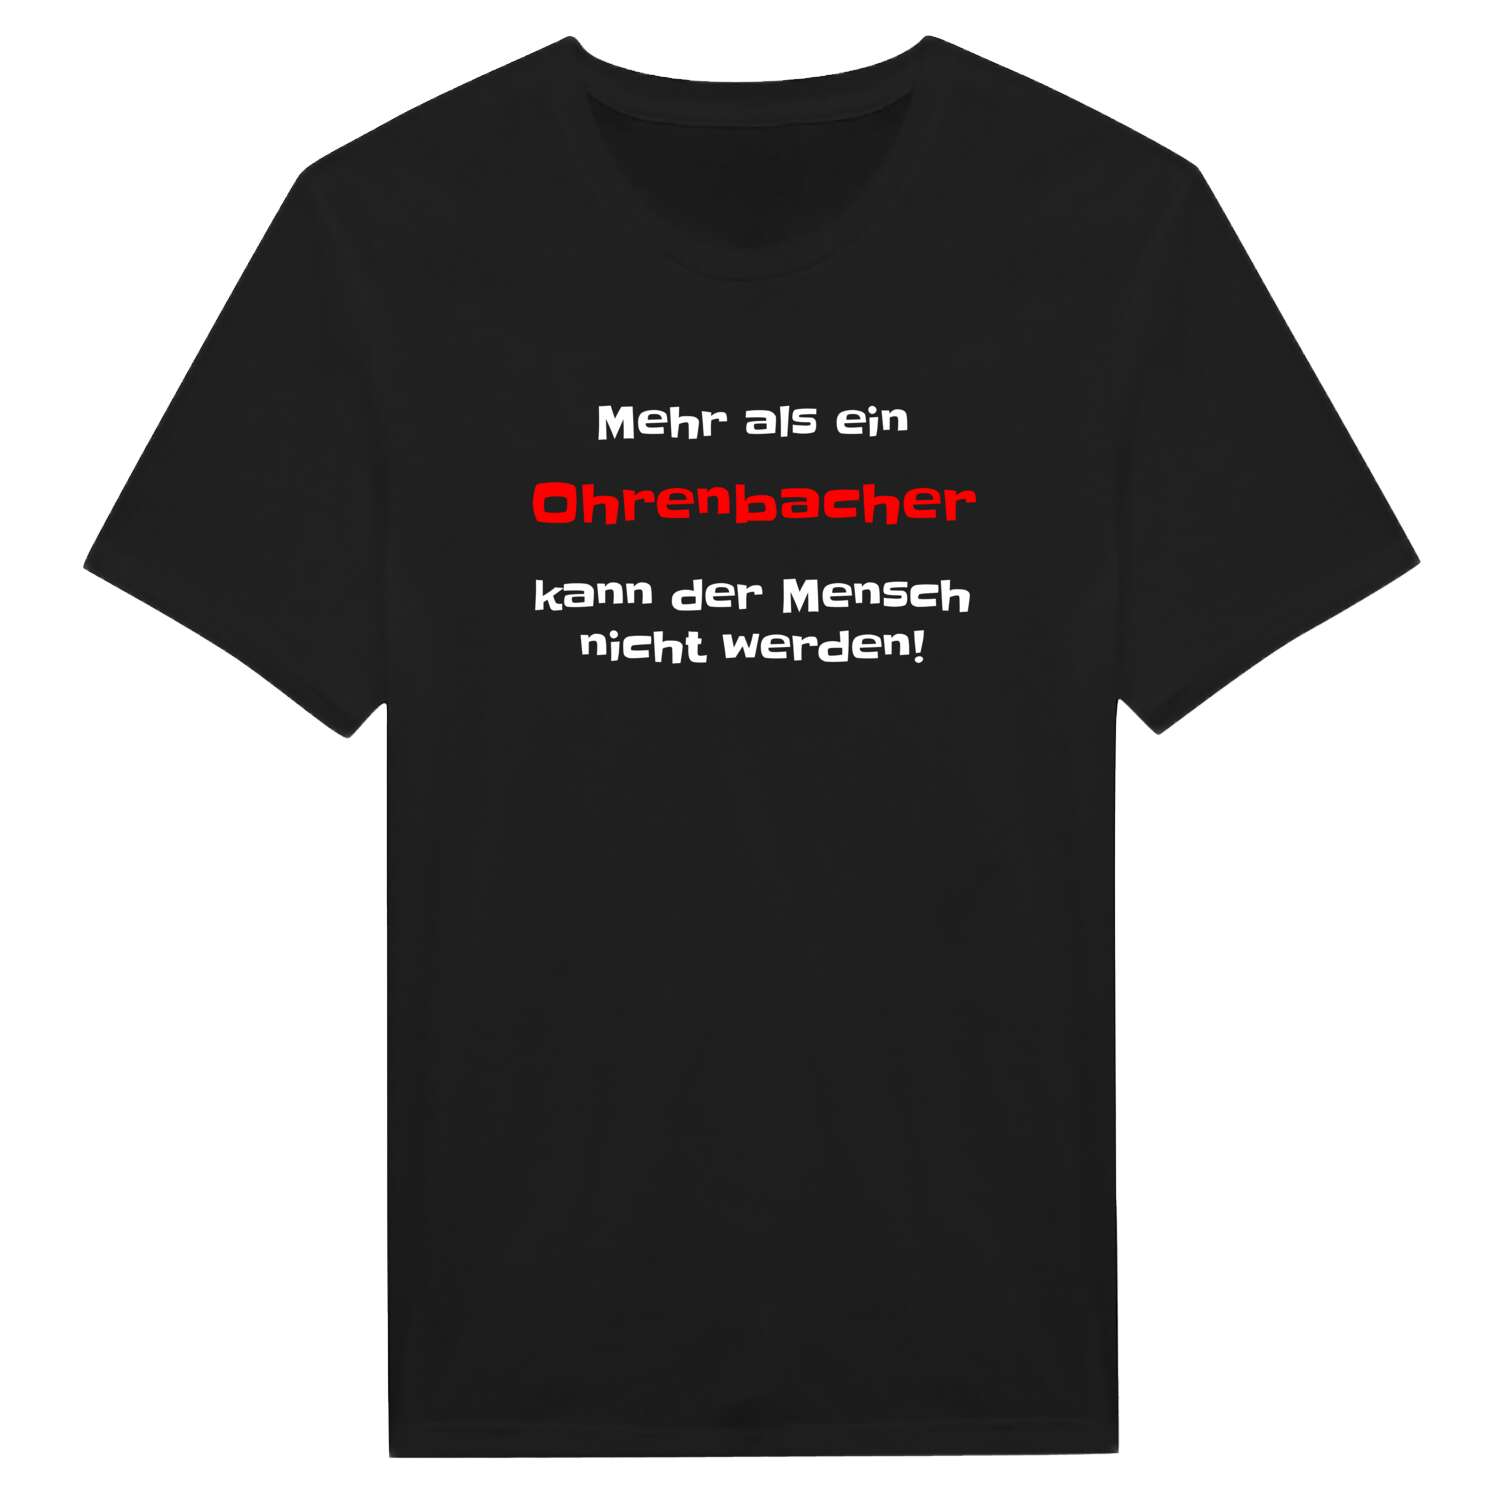 Ohrenbach T-Shirt »Mehr als ein«